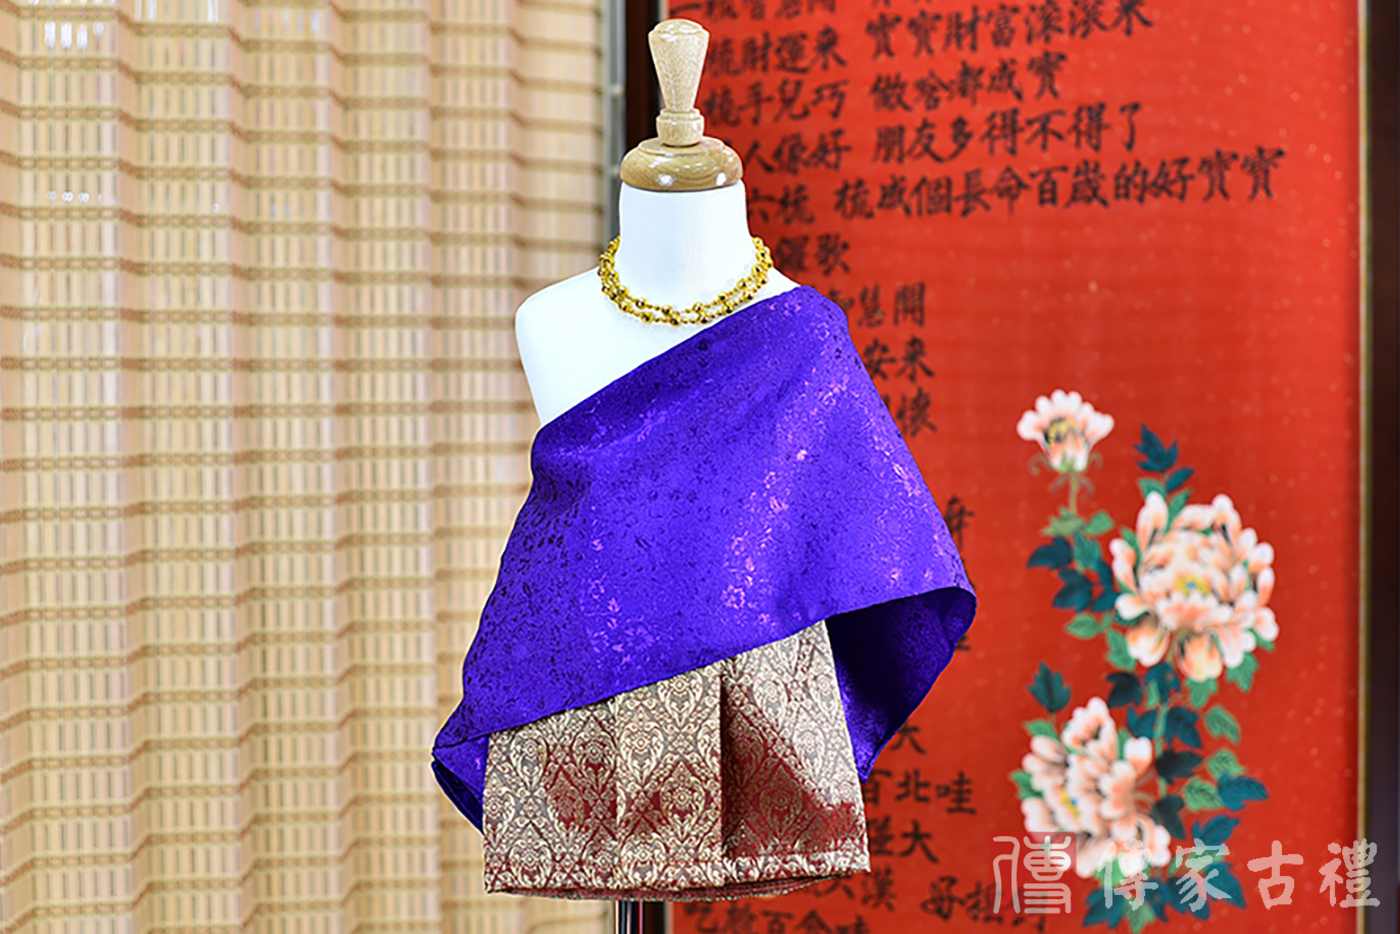 2024-02-23小孩皇室泰服古裝禮服。深紫色的紋路披肩上衣搭配金色金紋路裙裝的泰式古裝禮服。照片集